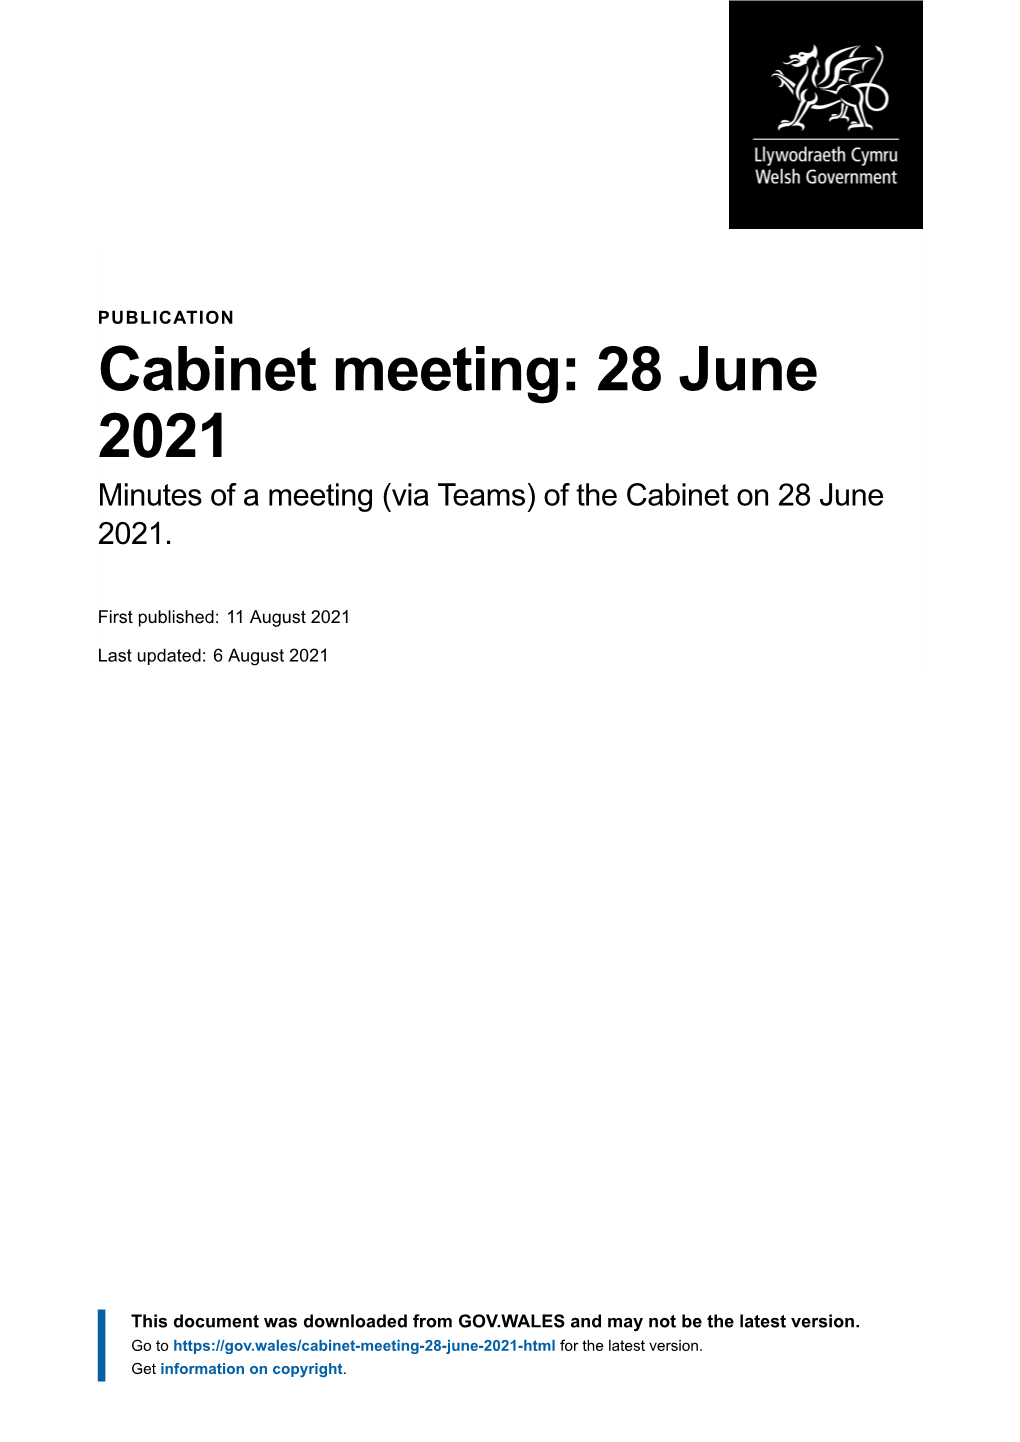 Cabinet Meeting: 28 June 2021 | GOV.WALES